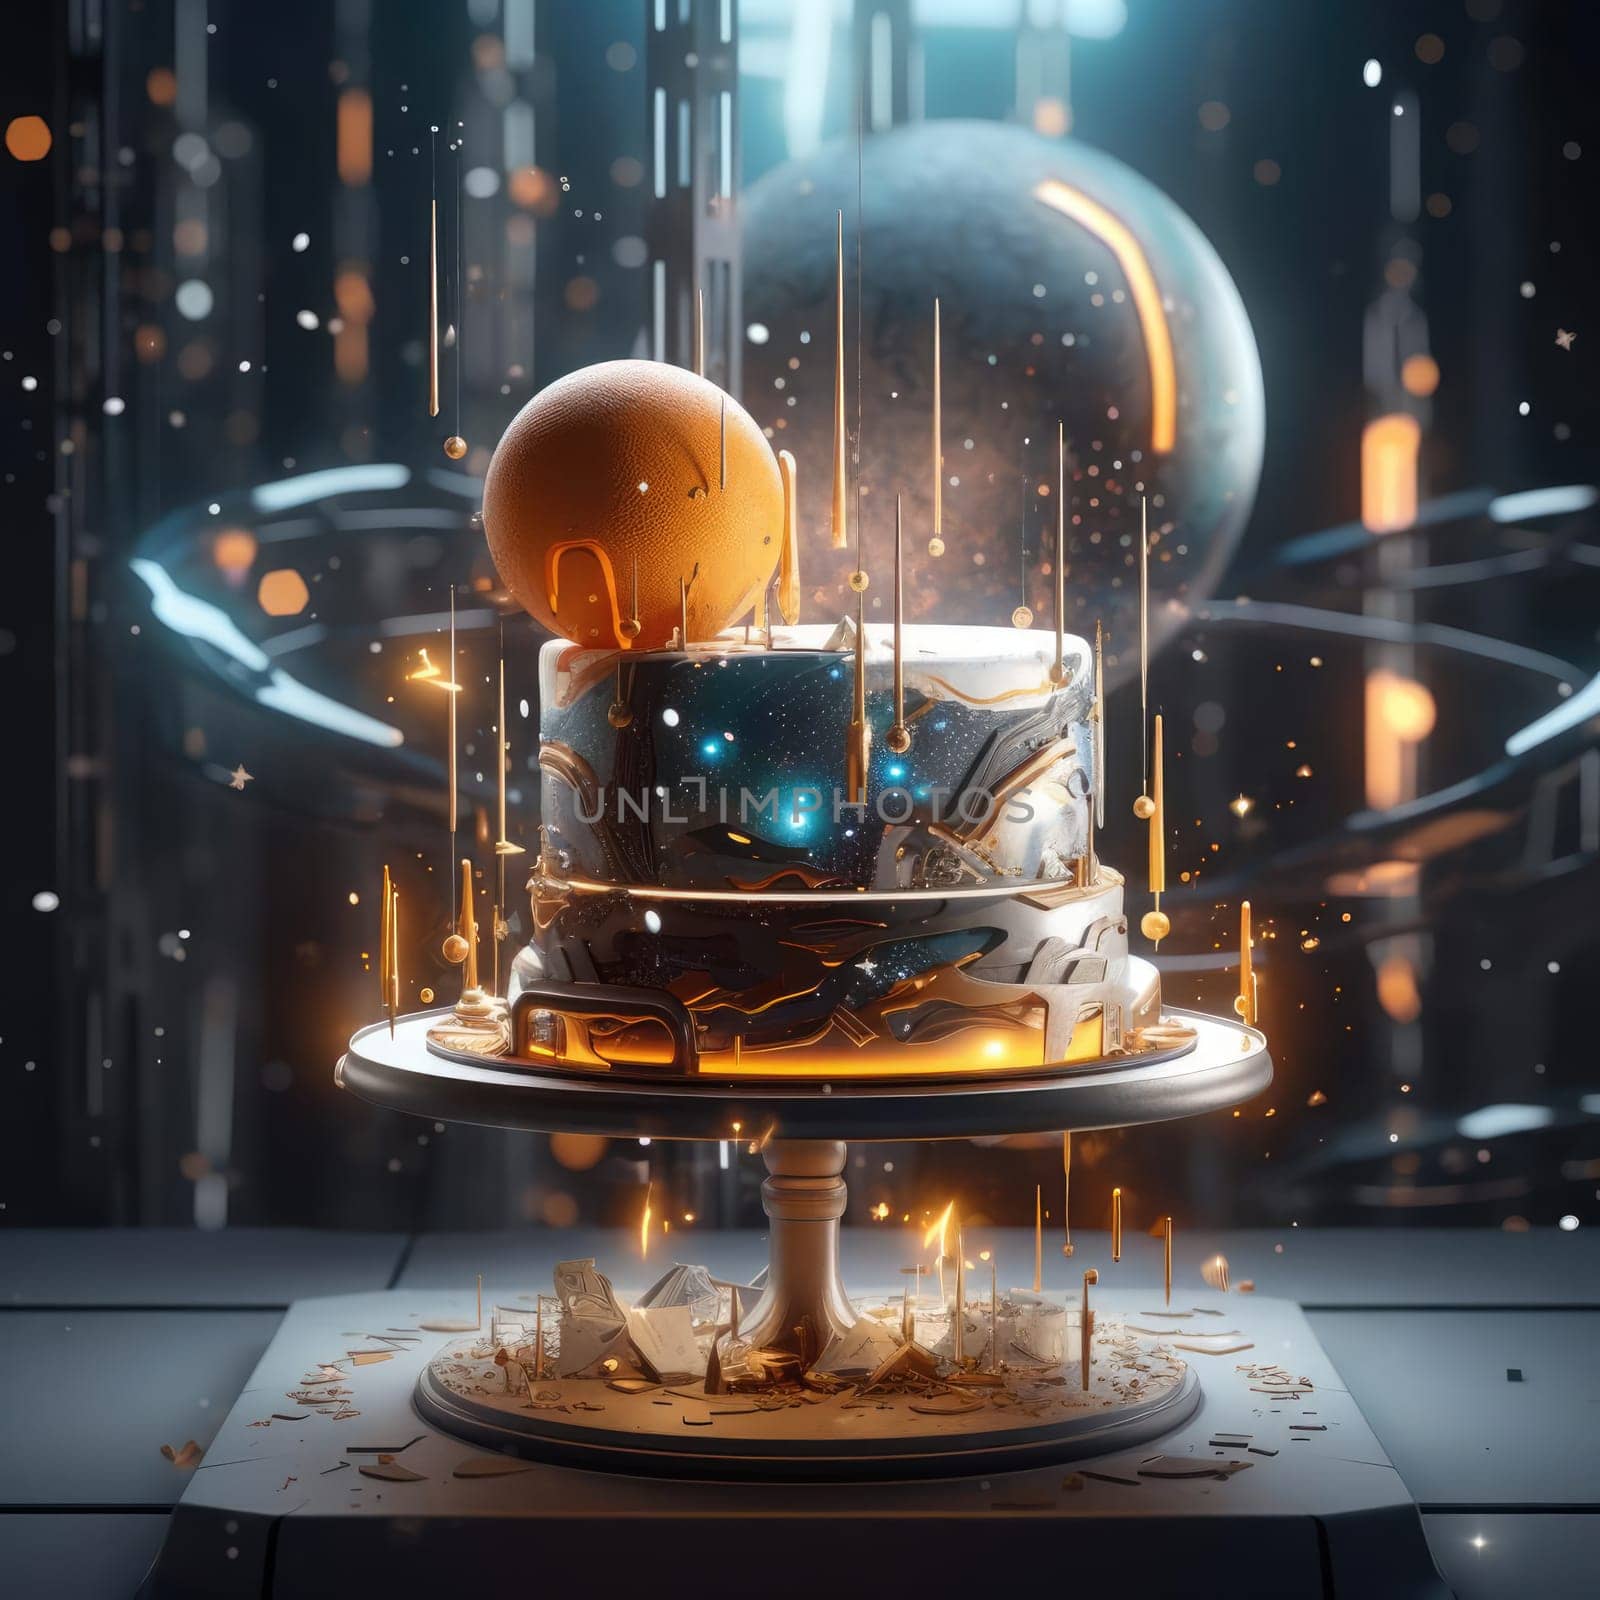 Sci-fi cake by cherezoff